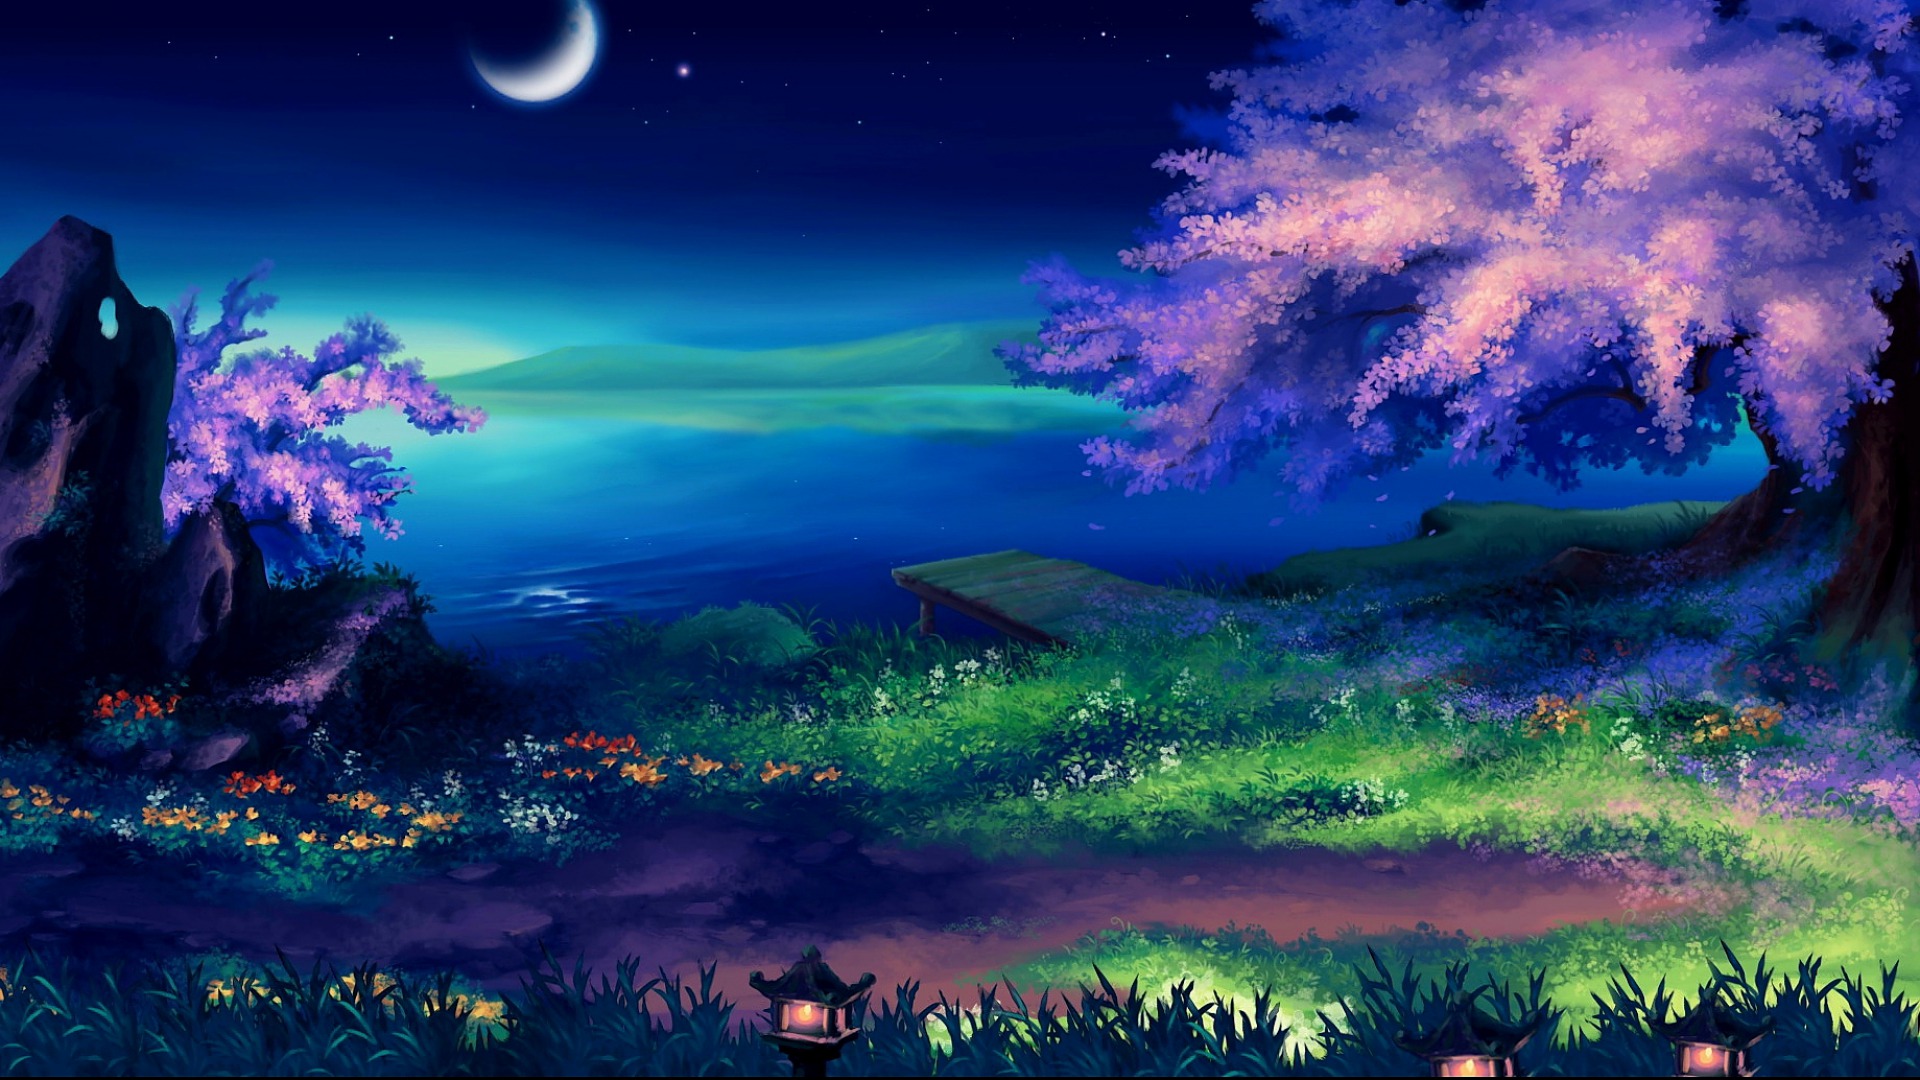 Chiêm ngưỡng vẻ đẹp giả tưởng của đêm tuyệt vời này. Hình ảnh sẽ đưa bạn đến một vùng đất kỳ bí với những cây cối kỳ dị và ánh sao lấp lánh trên trời. 